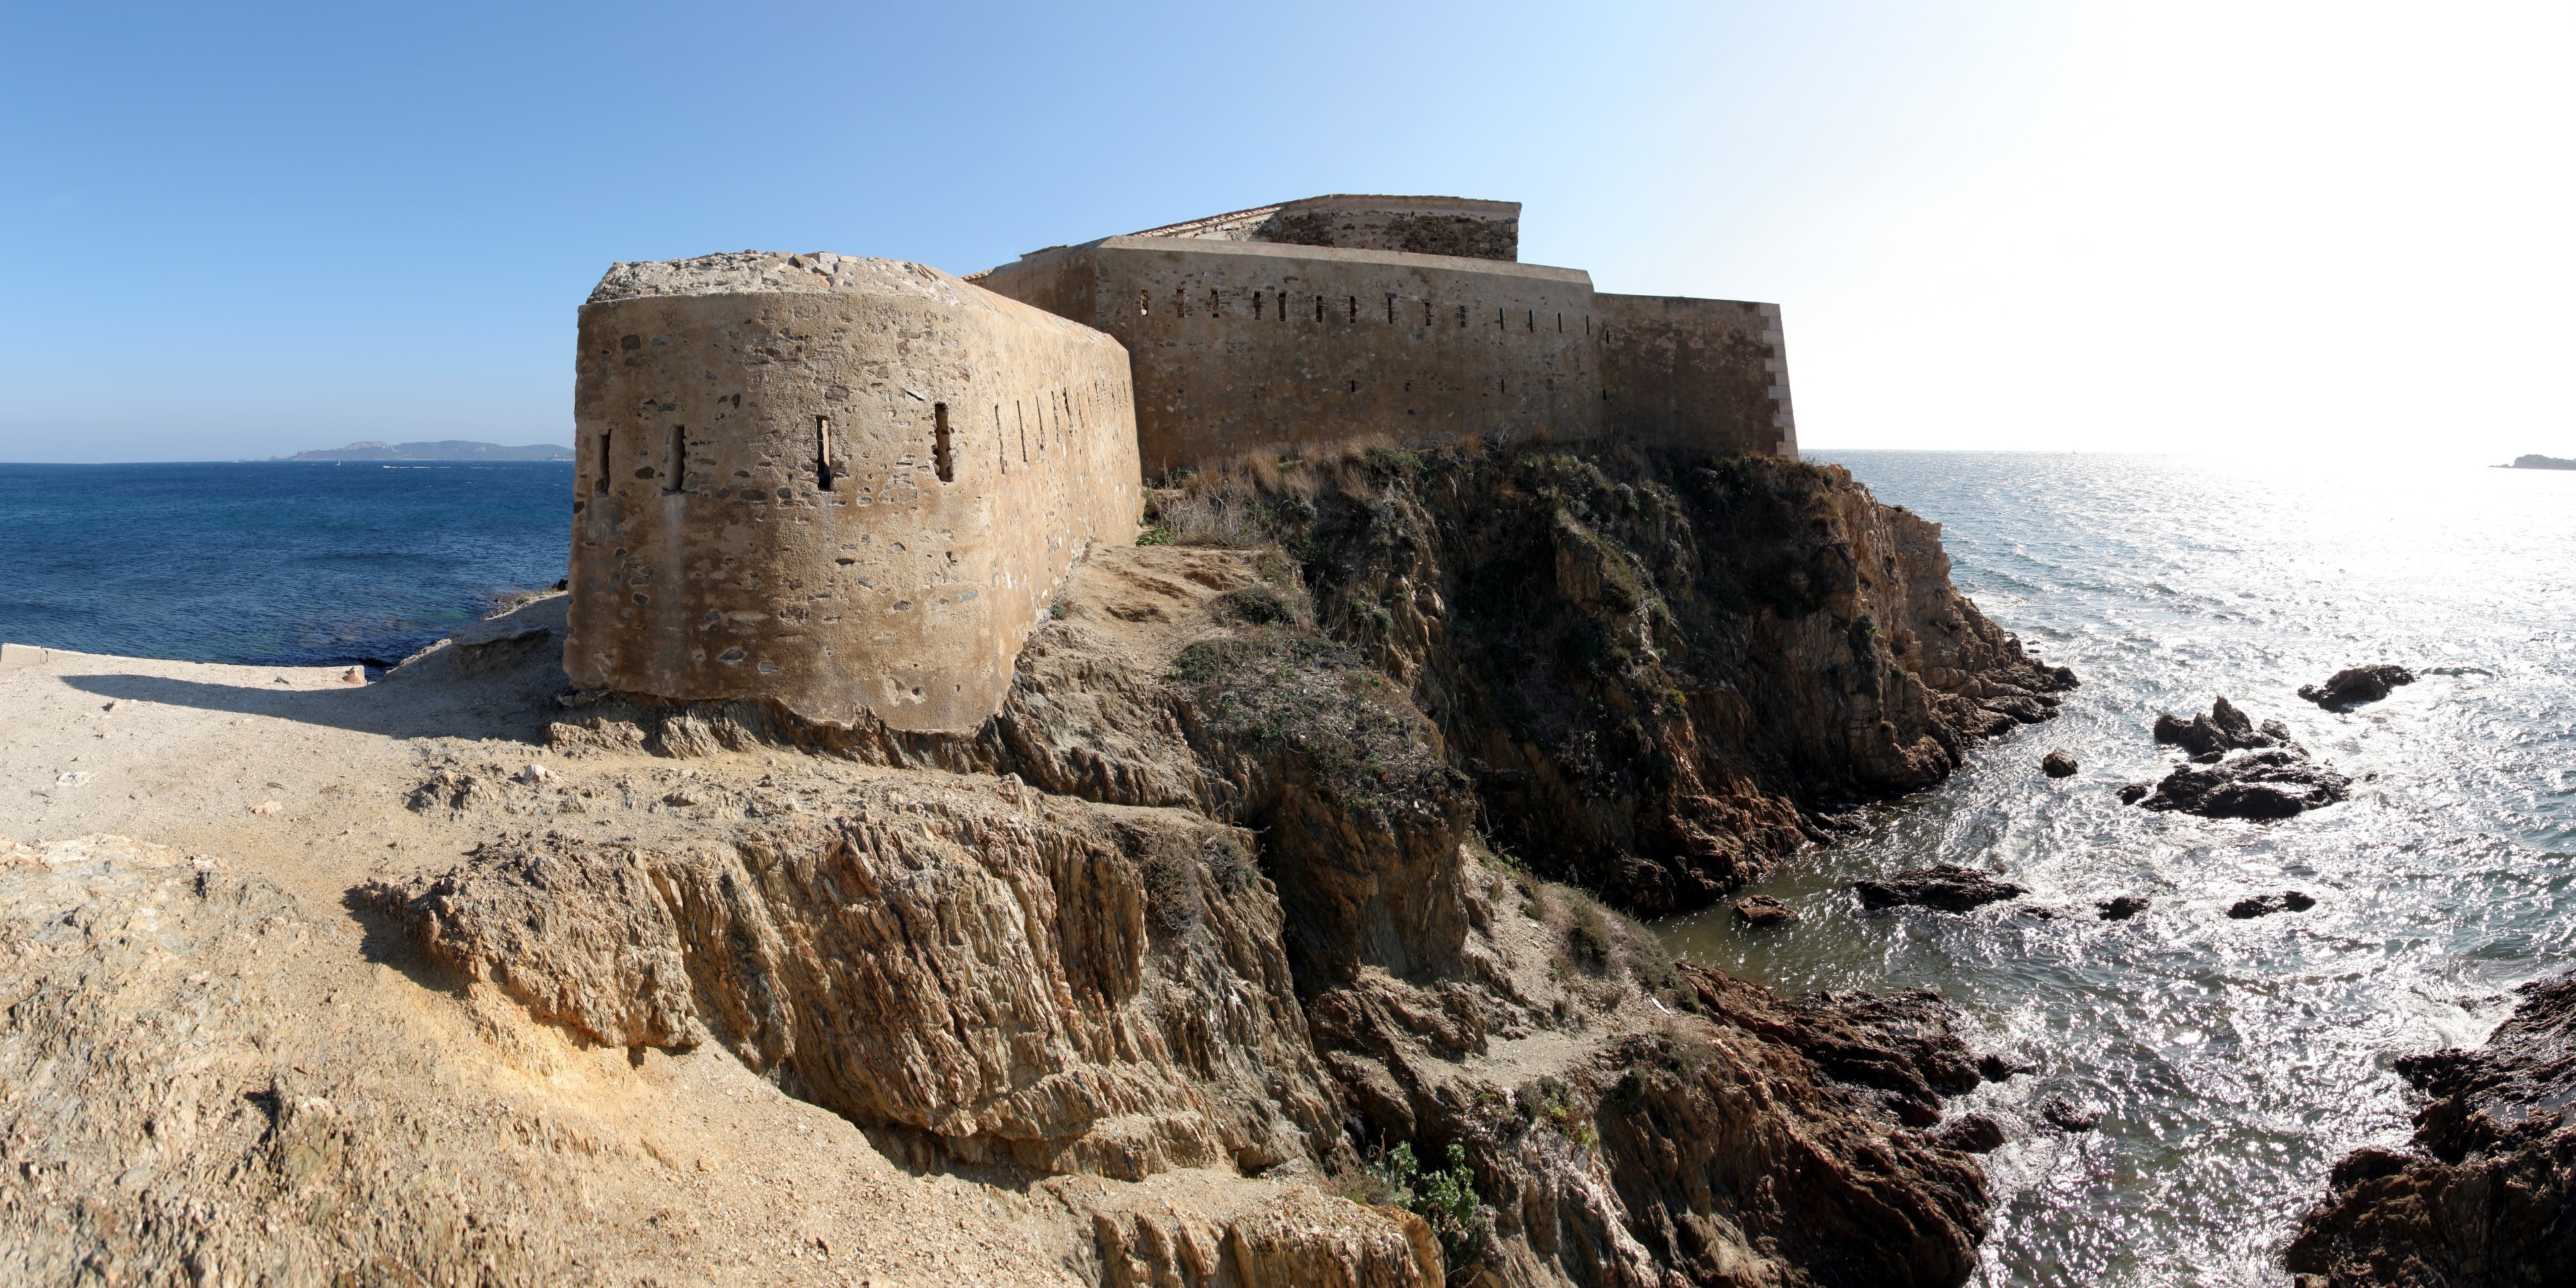 Die Festung Tour Fondue auf der Halbinsel Giens an der Côte d’Azur. Mit Hugin aus acht einzelnen Bildern zusammengesetztes Panorama.